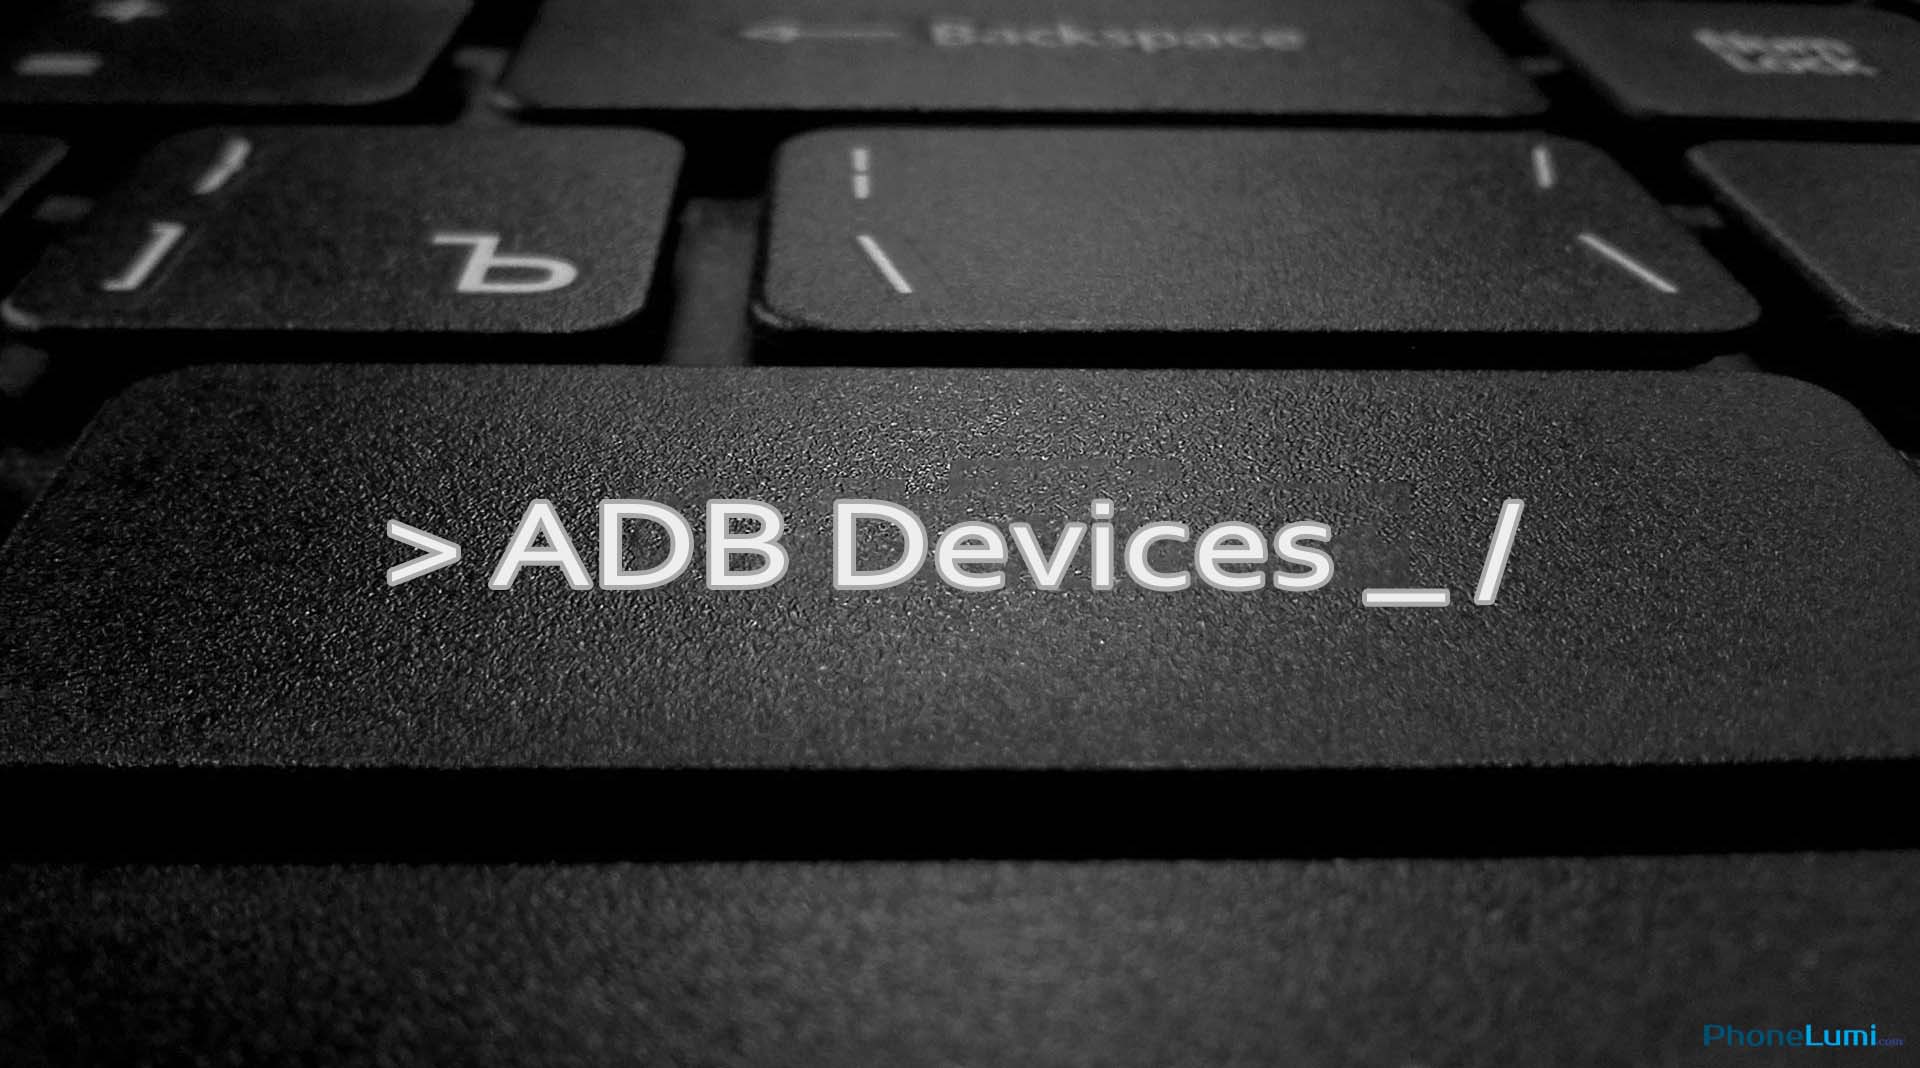 adb driver for windows 10 64 bit